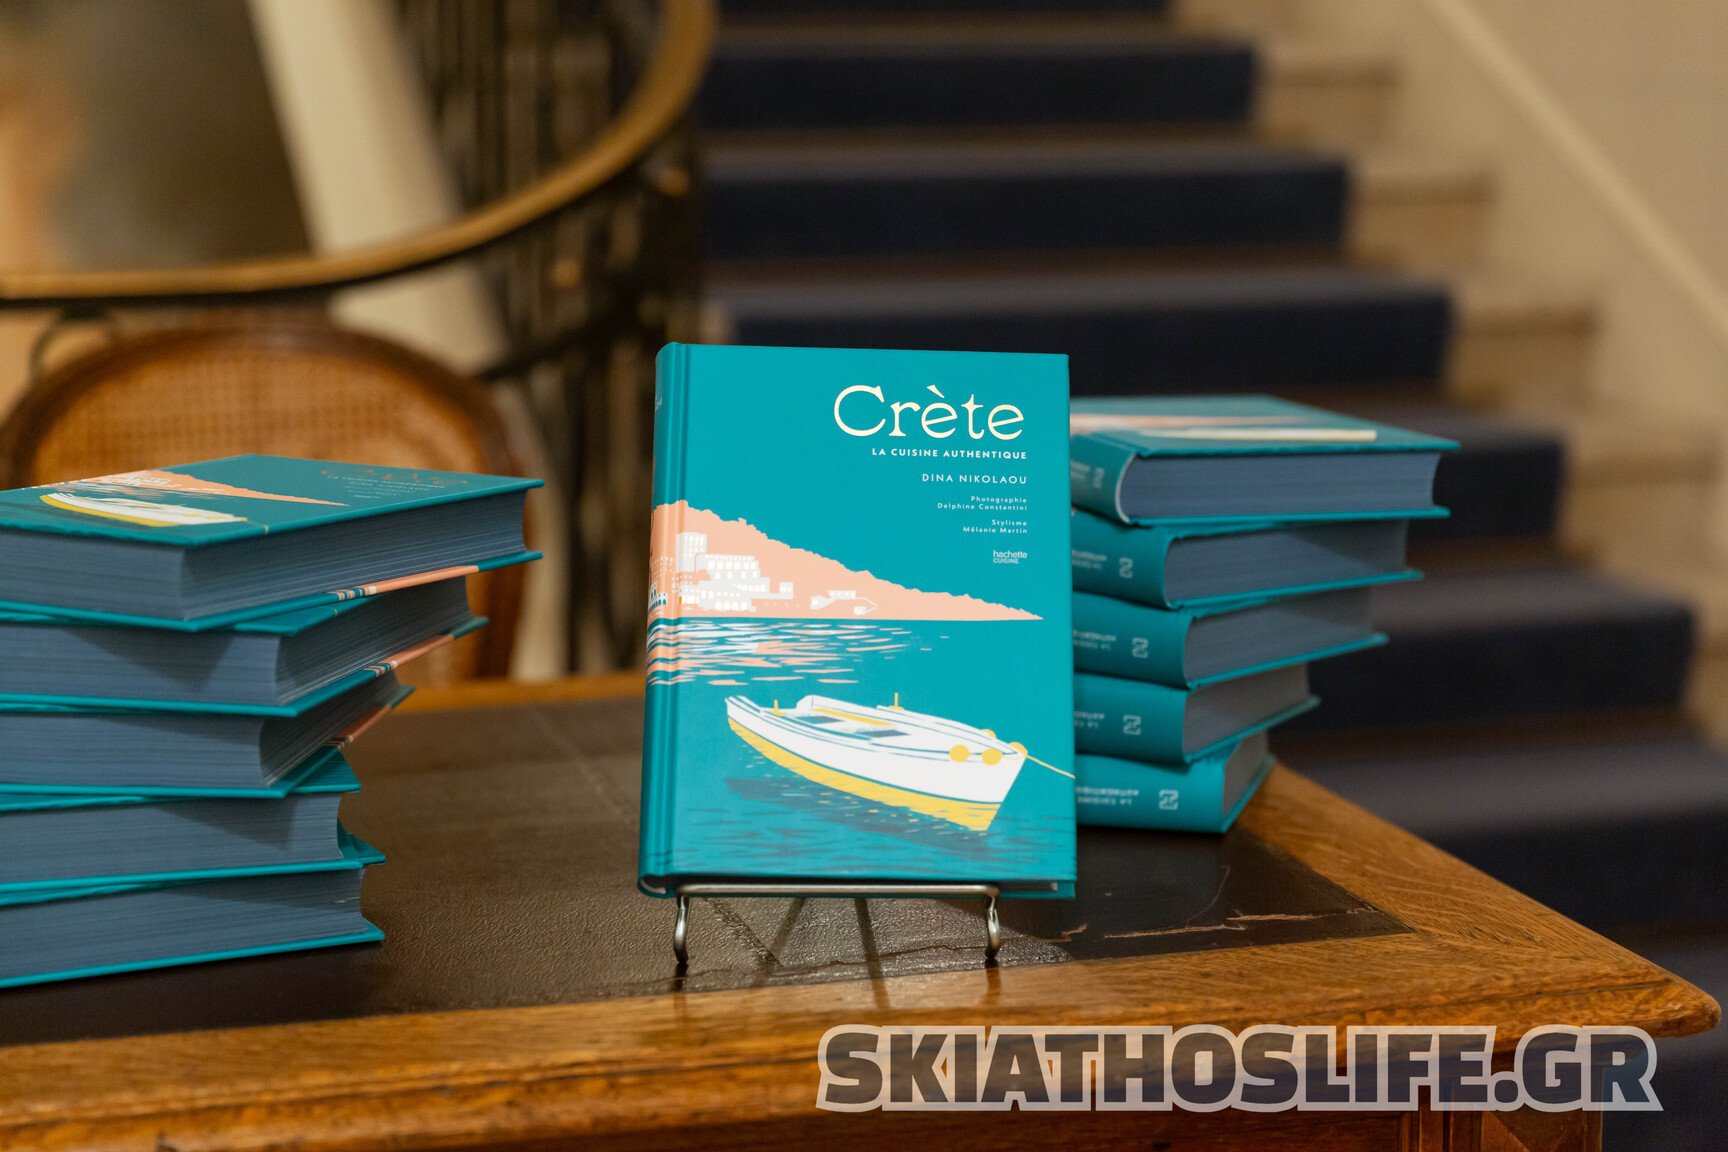 Η Κρήτη στο επίκεντρο της Παρισινής γαστρονομίας με το νέο βιβλίο της Ντίνας Νικολάου CRÈTE la cuisine authentique